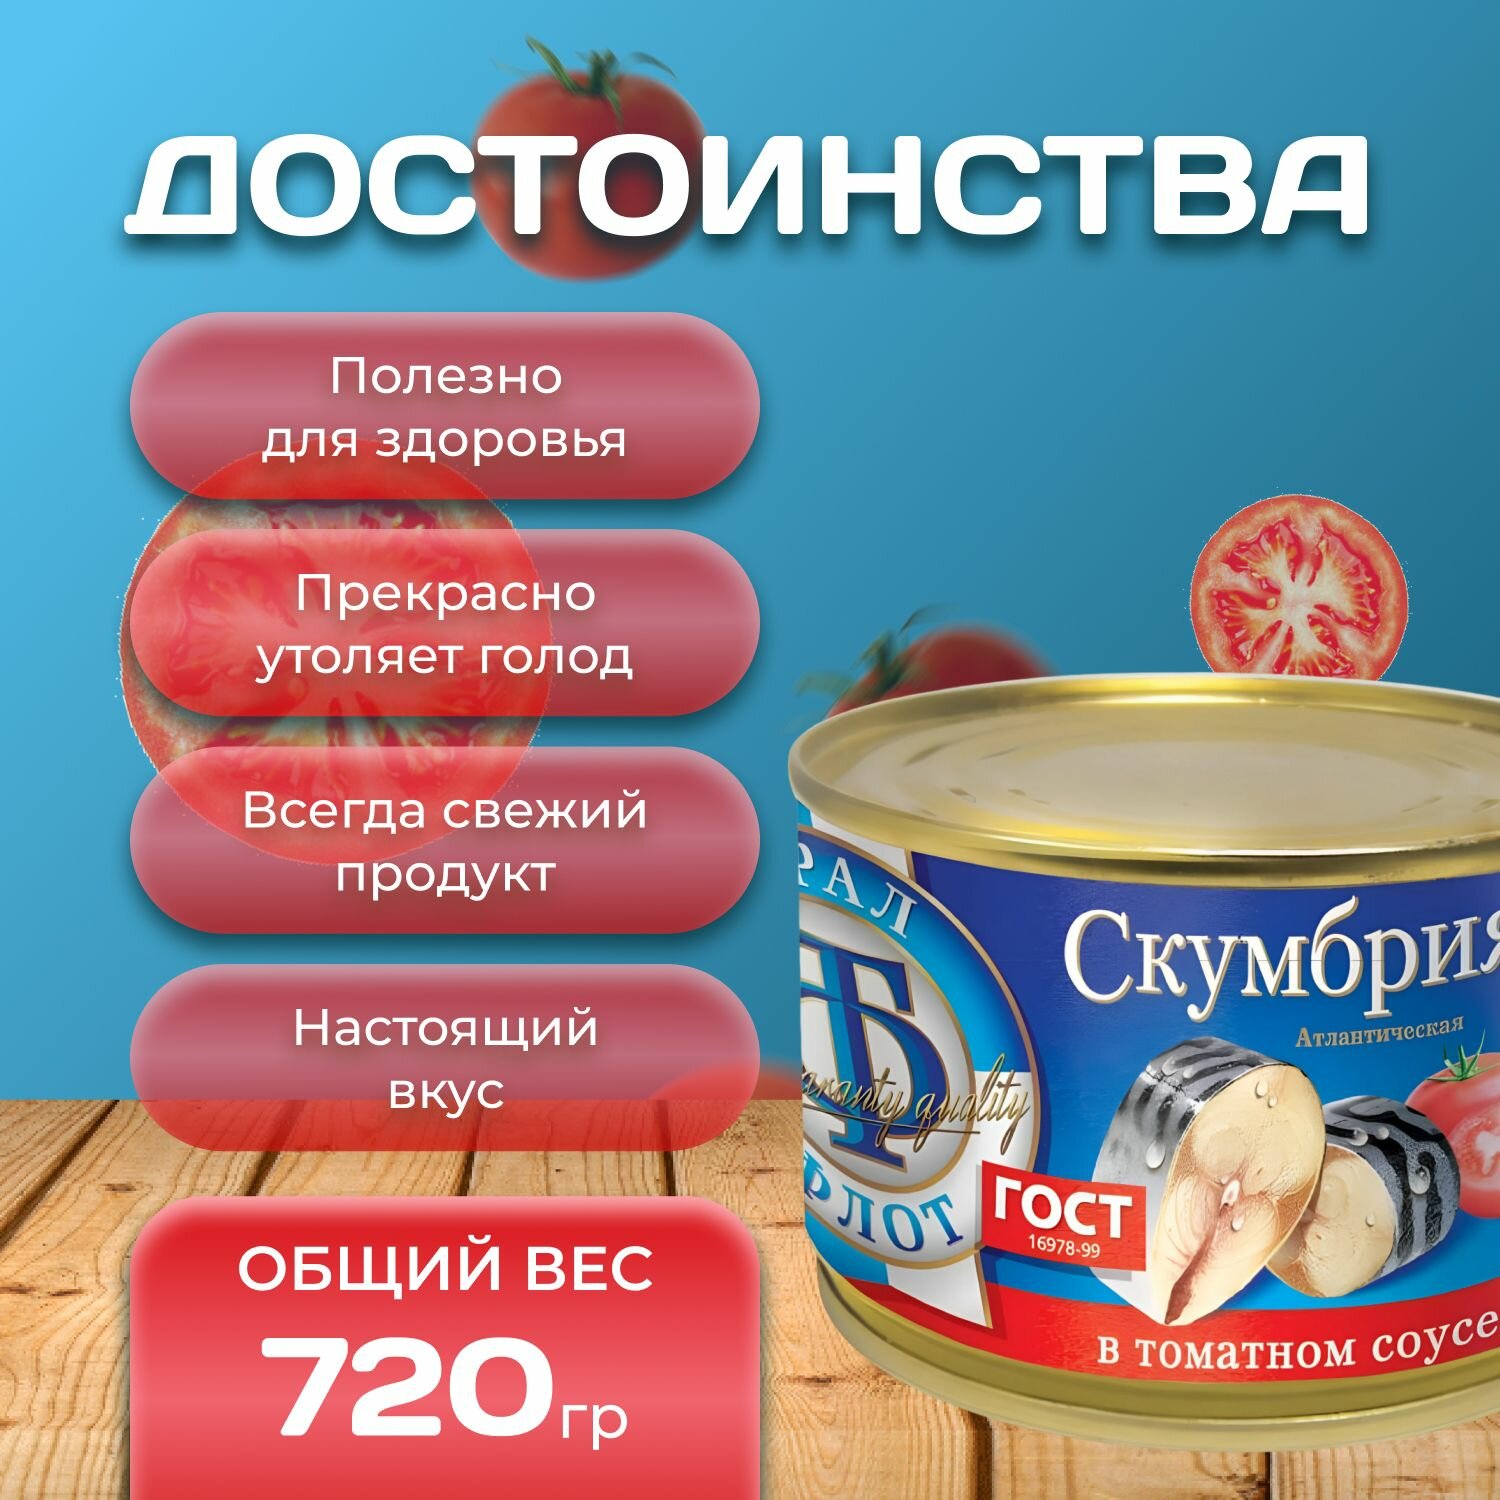 Скумбрия "в томатном соусе" 3 шт. по 240 гр. (720 гр.)